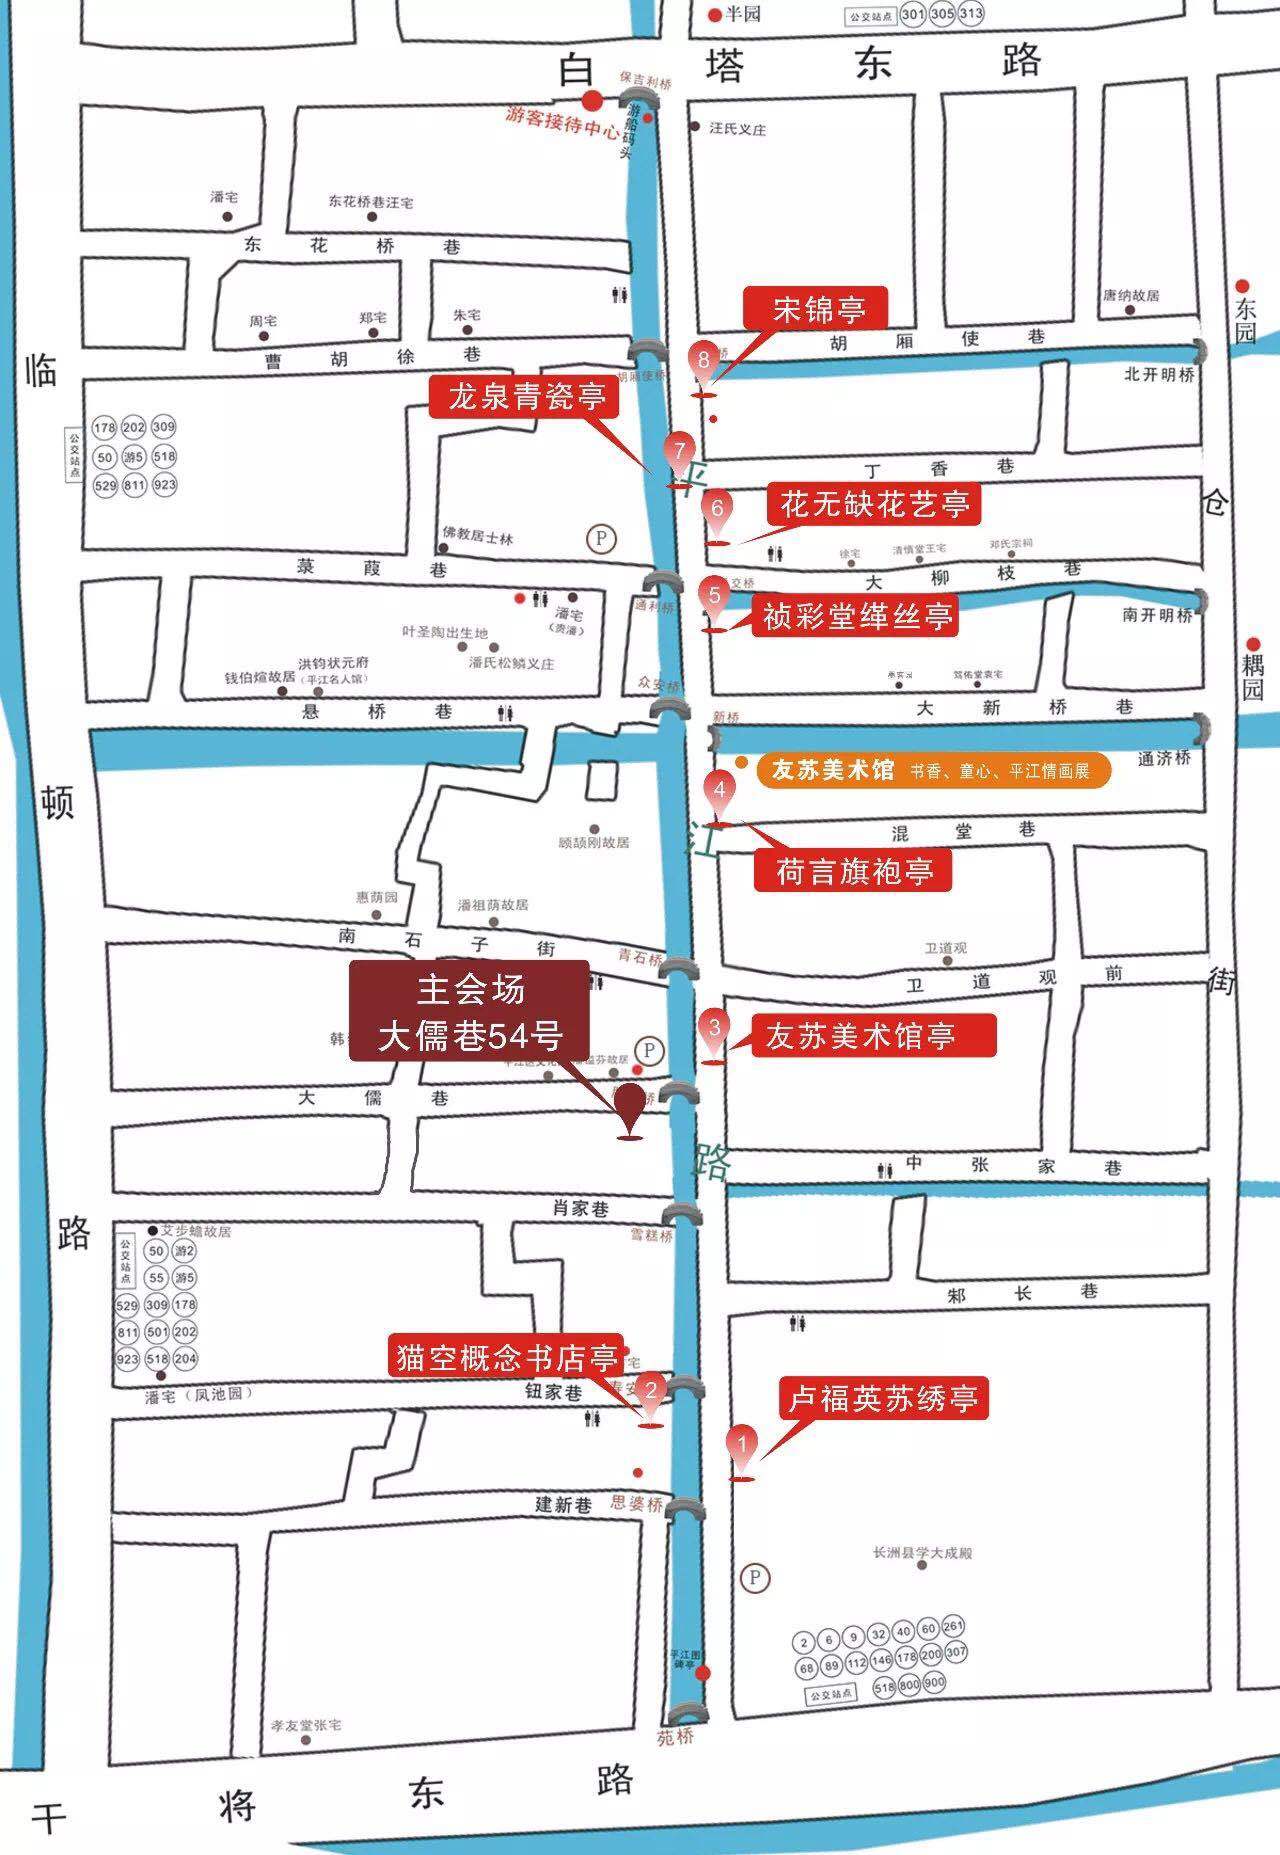 平江路历史街区地图图片